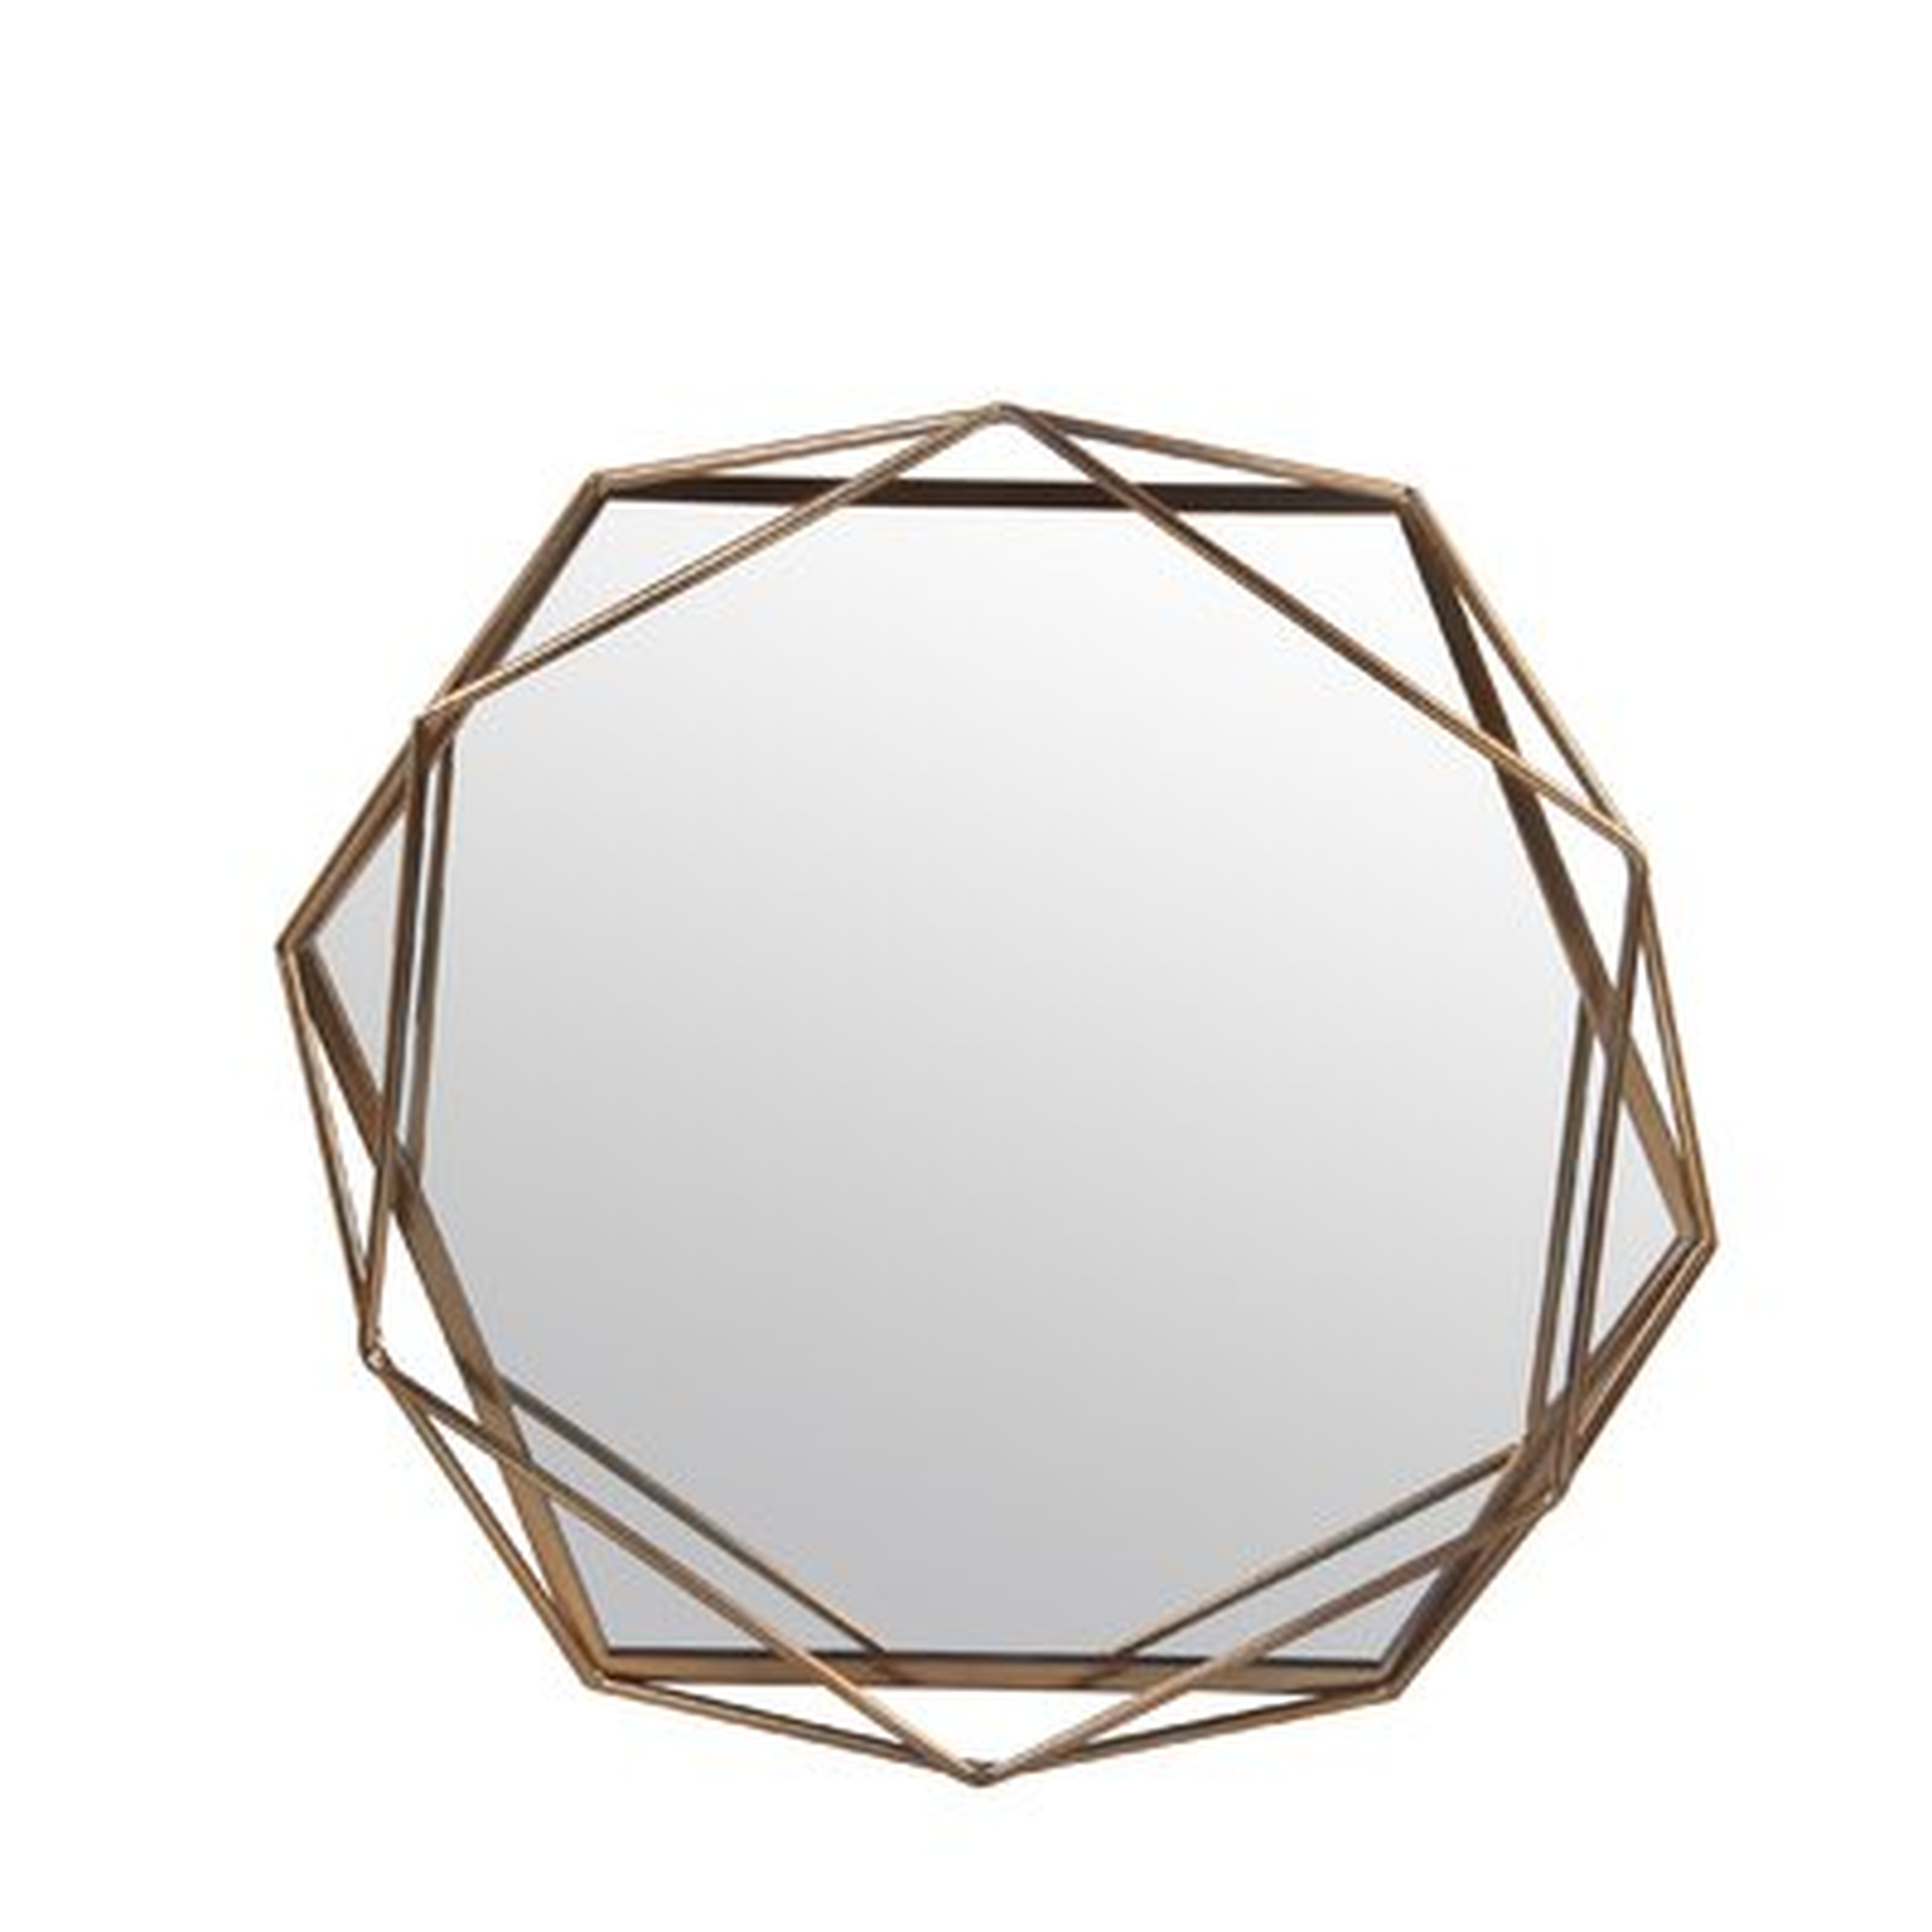 Dekalb Iron Hexagonal Wall Accent Mirror - Wayfair